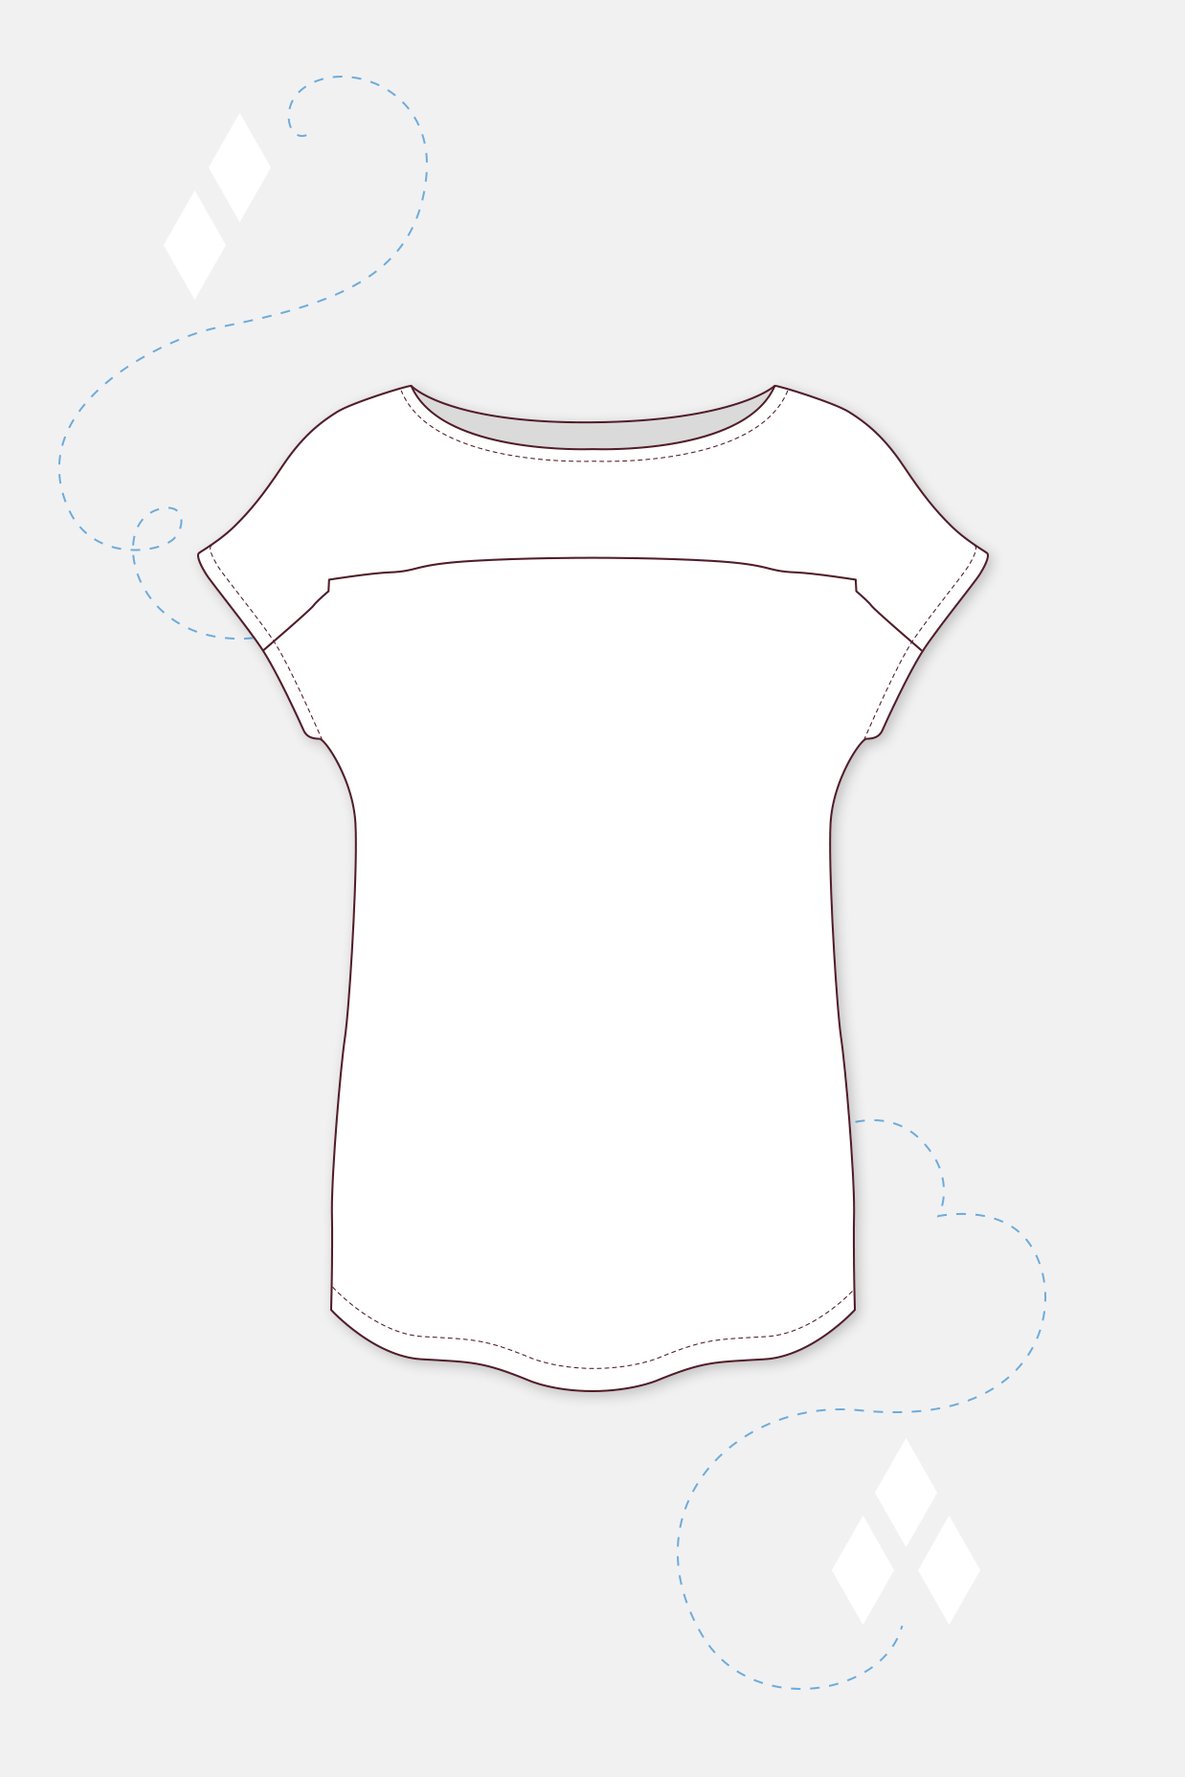 Schnittmuster "Sara" für ein einfaches Damenshirt | PATTYDOO